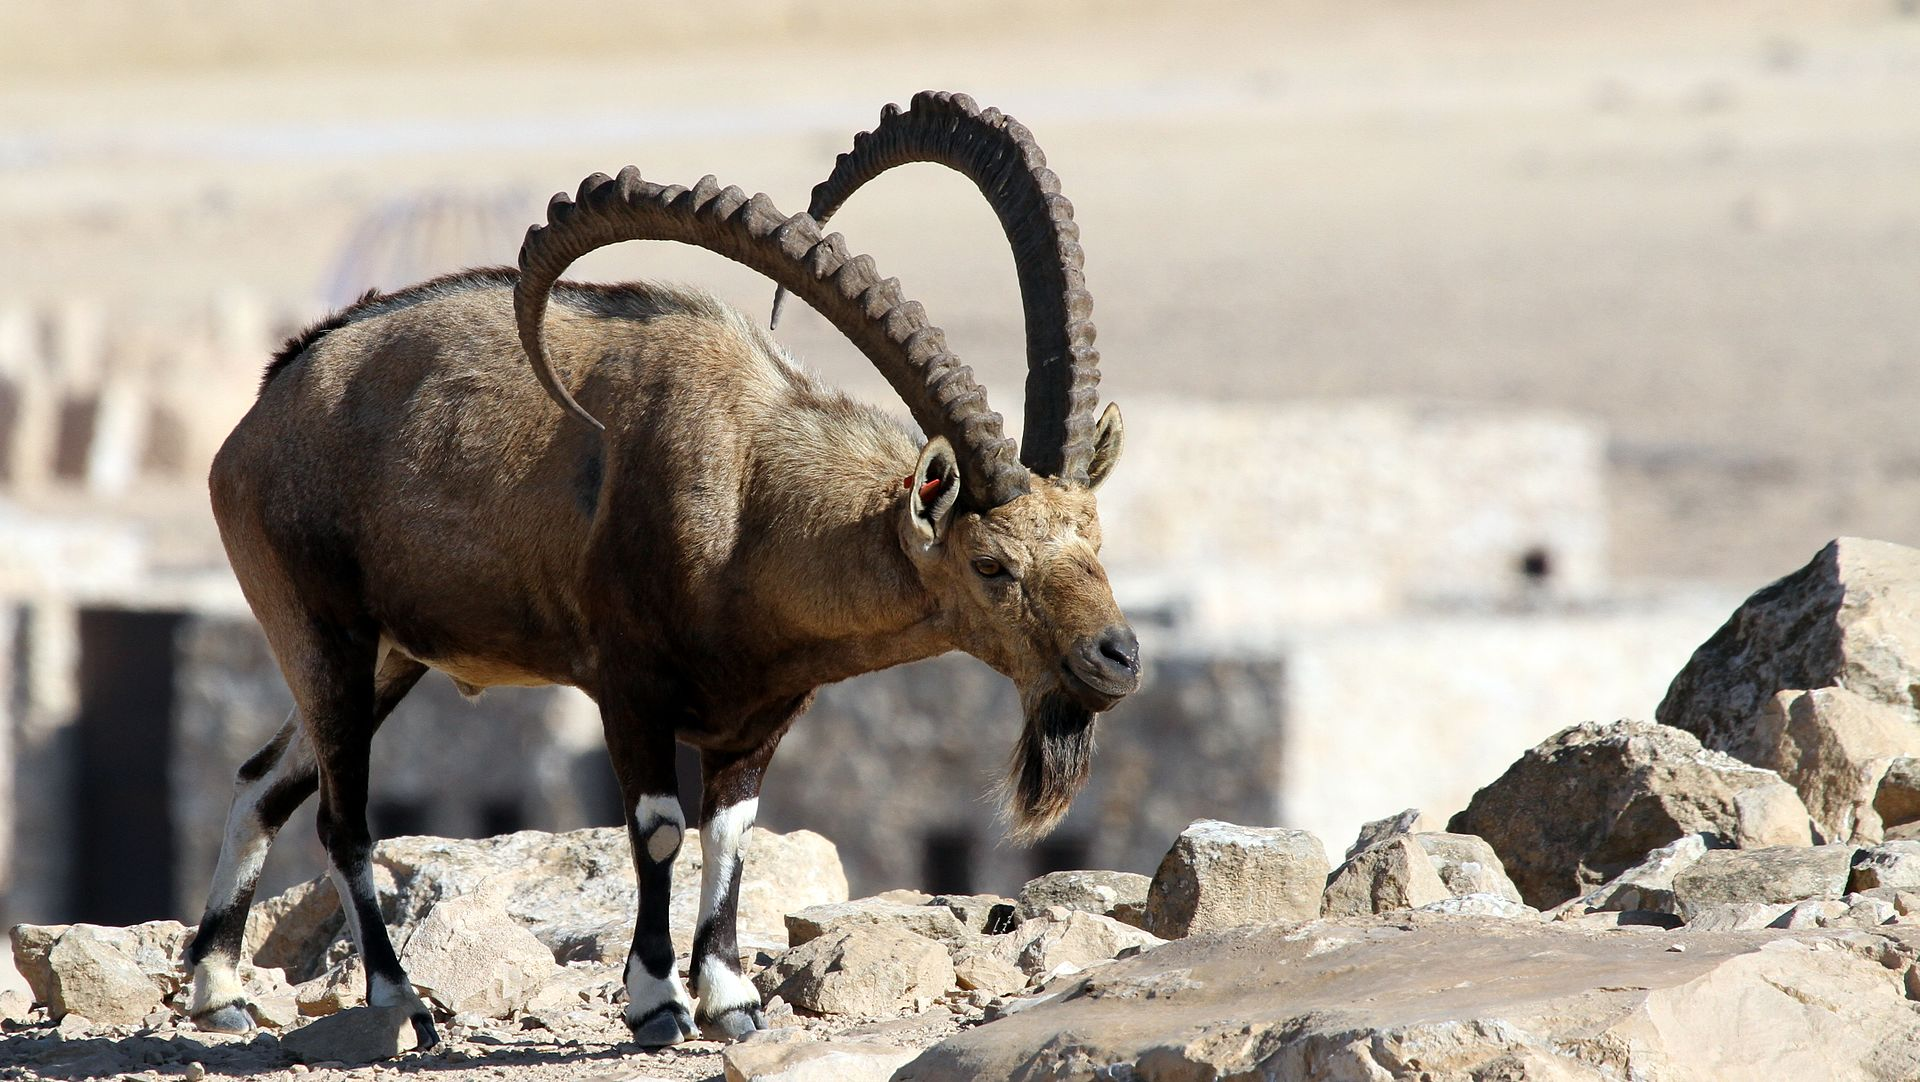 努比亚羱羊,世界最小的山羊——乖乖遵守着伯格曼法则